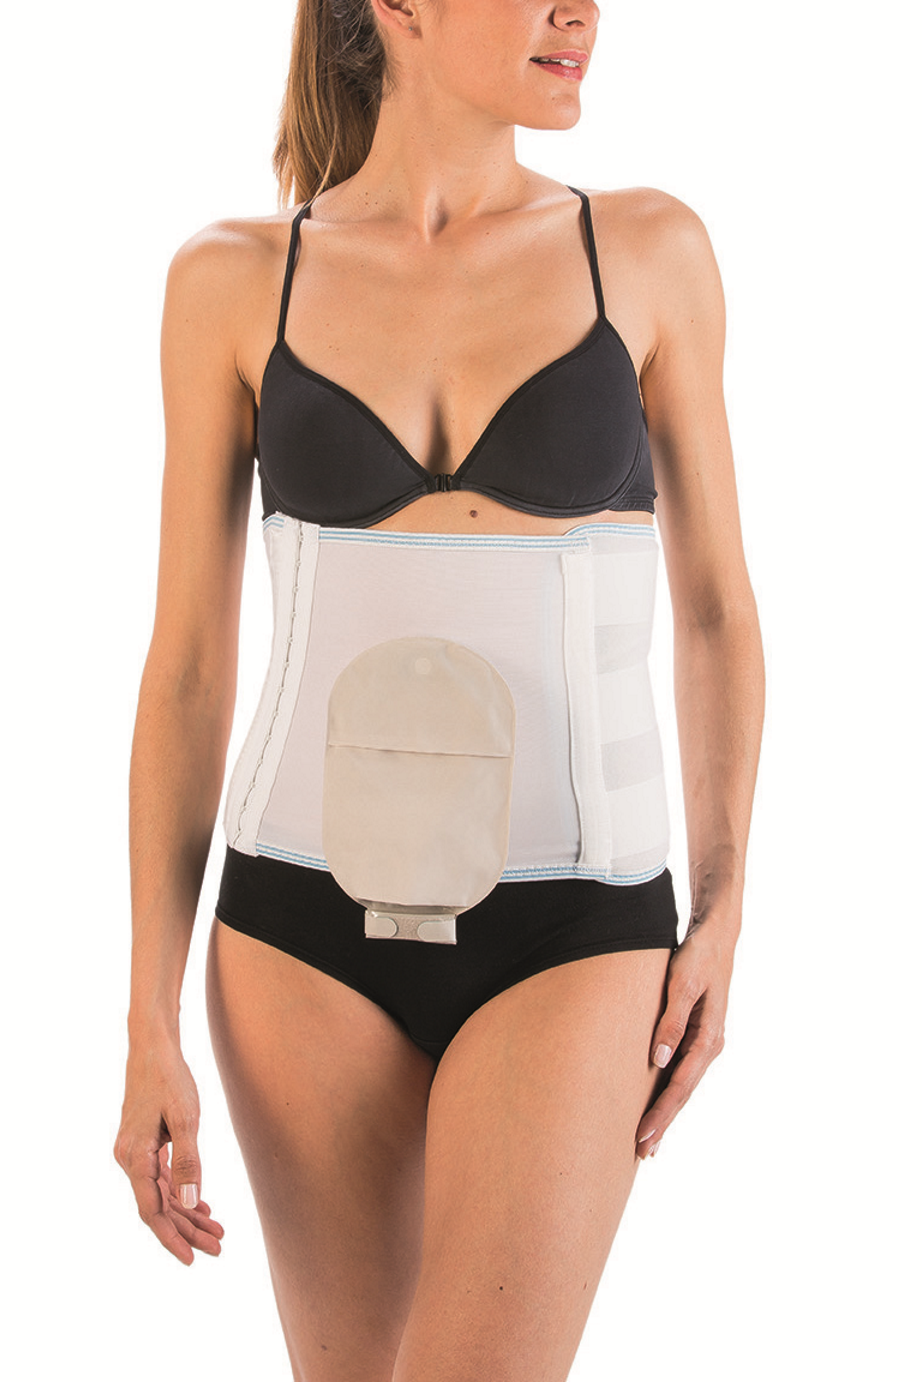 Compression abdominale pour femmes, appareil Post-chirurgie pour aplatir  les abdominaux, ceinture abdominale, liposuccion, lombaires, ventre plat -  AliExpress